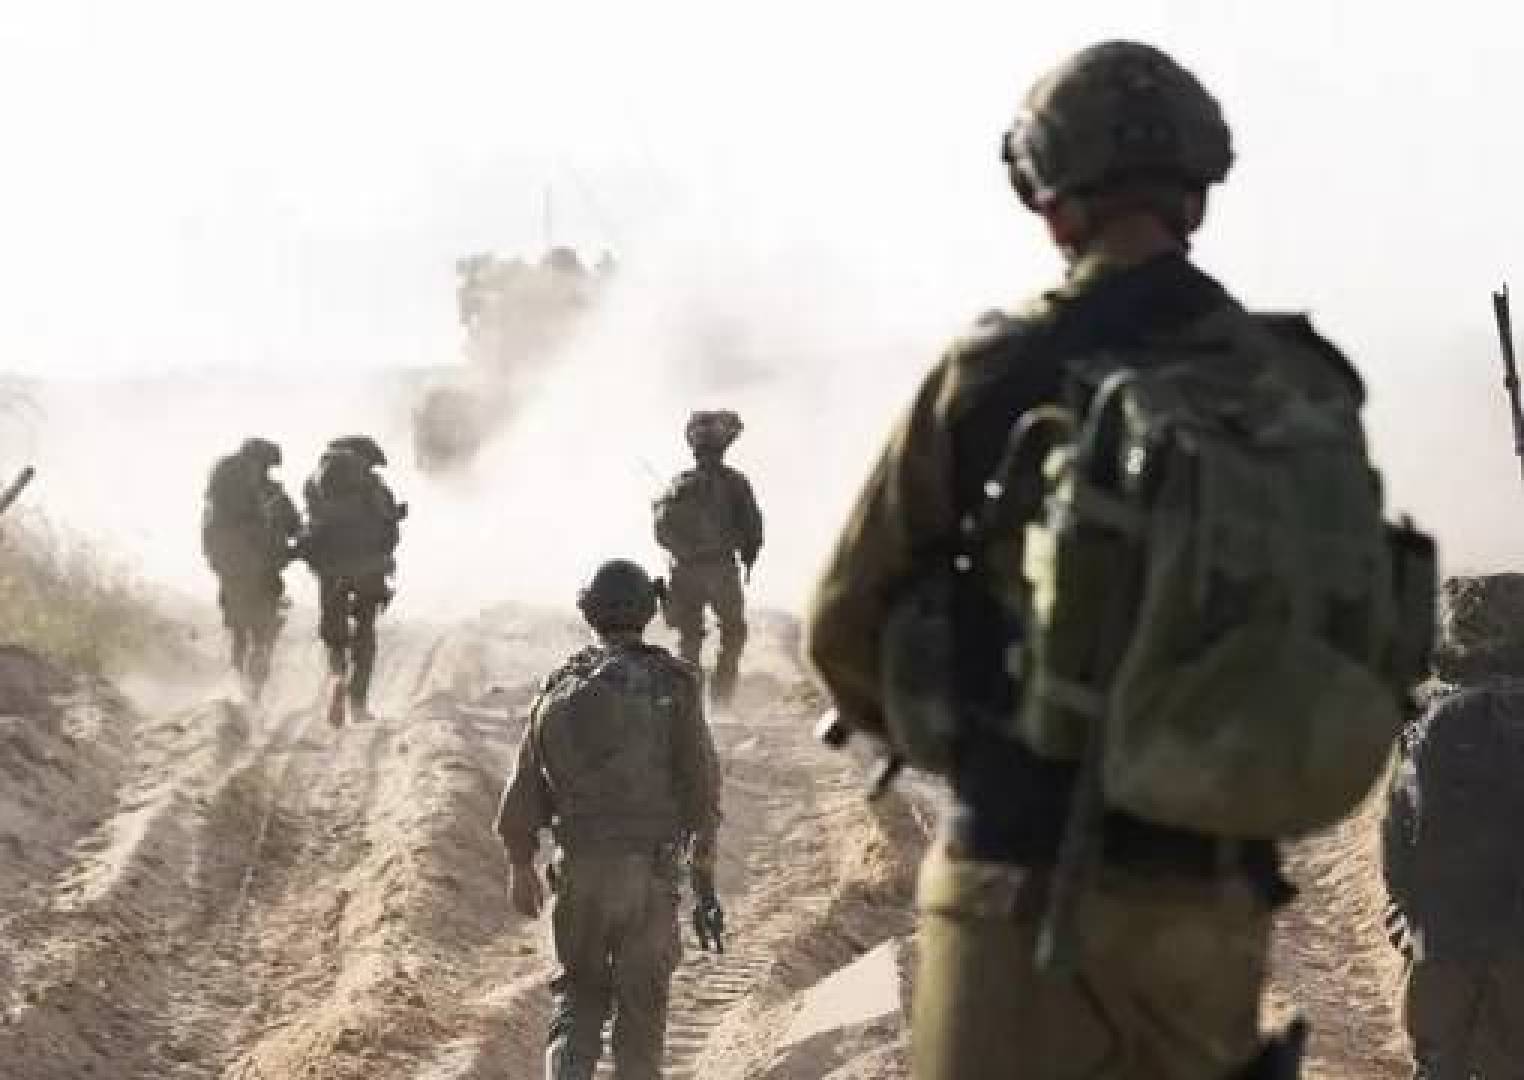 أكثر من 7 آلاف جندي إسرائيلي مصابون بإعاقة عقلية ويدخلون قسم التأهيل النفسي منذ بدء طوفان الأقصى